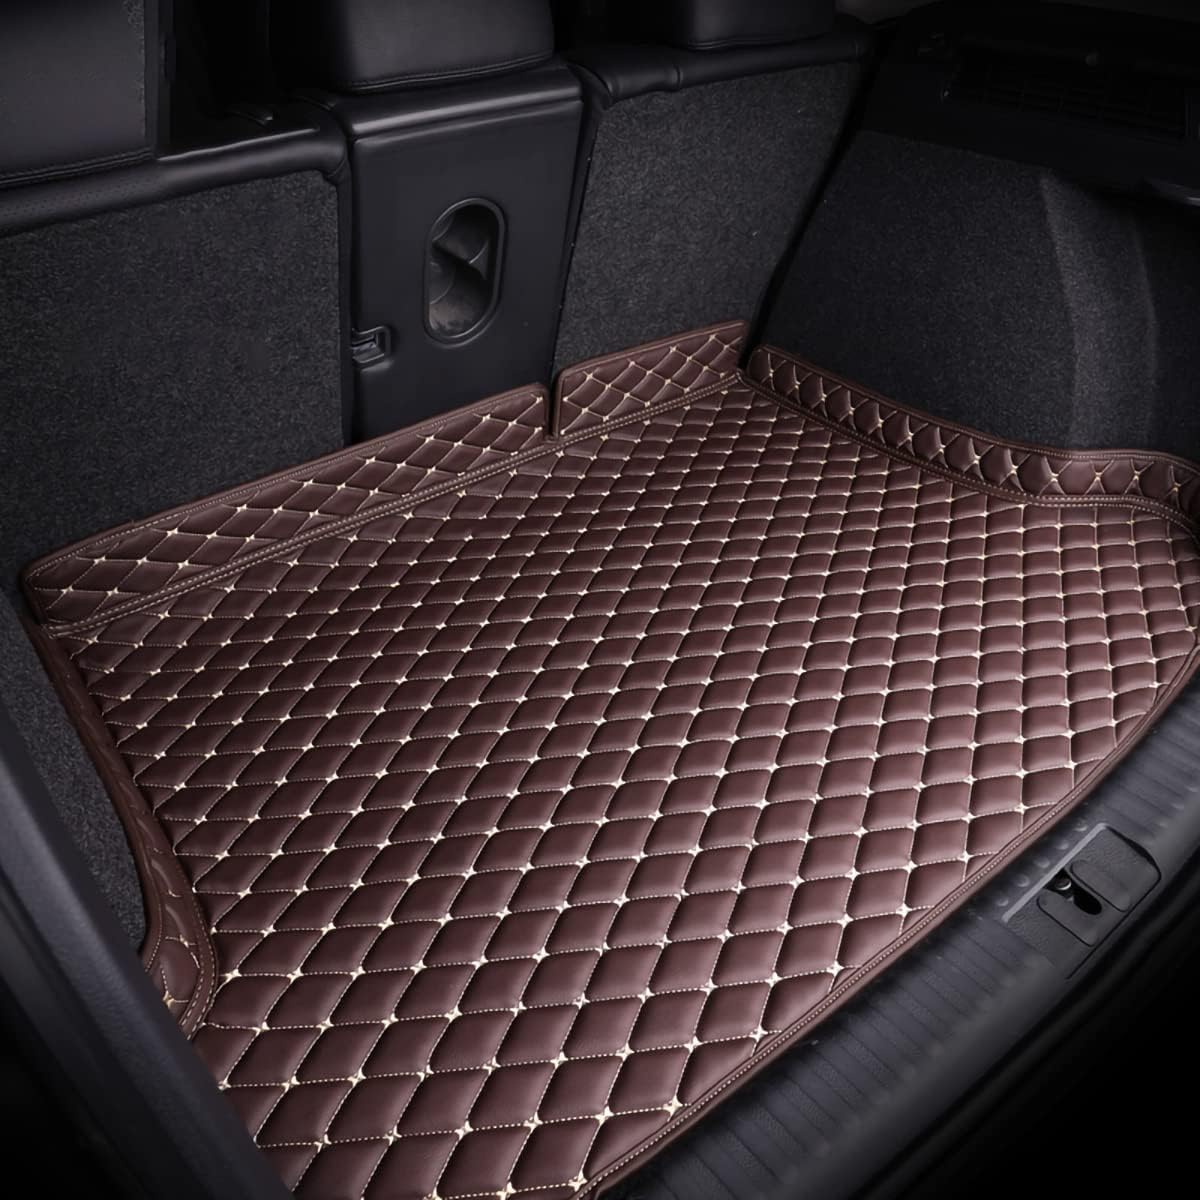 Auto Kofferraummatten für PEUGE 5008(5seats) 2017-, Kratzfeste Kofferraum Schutzmatten.,Brown von LPOOSAKW